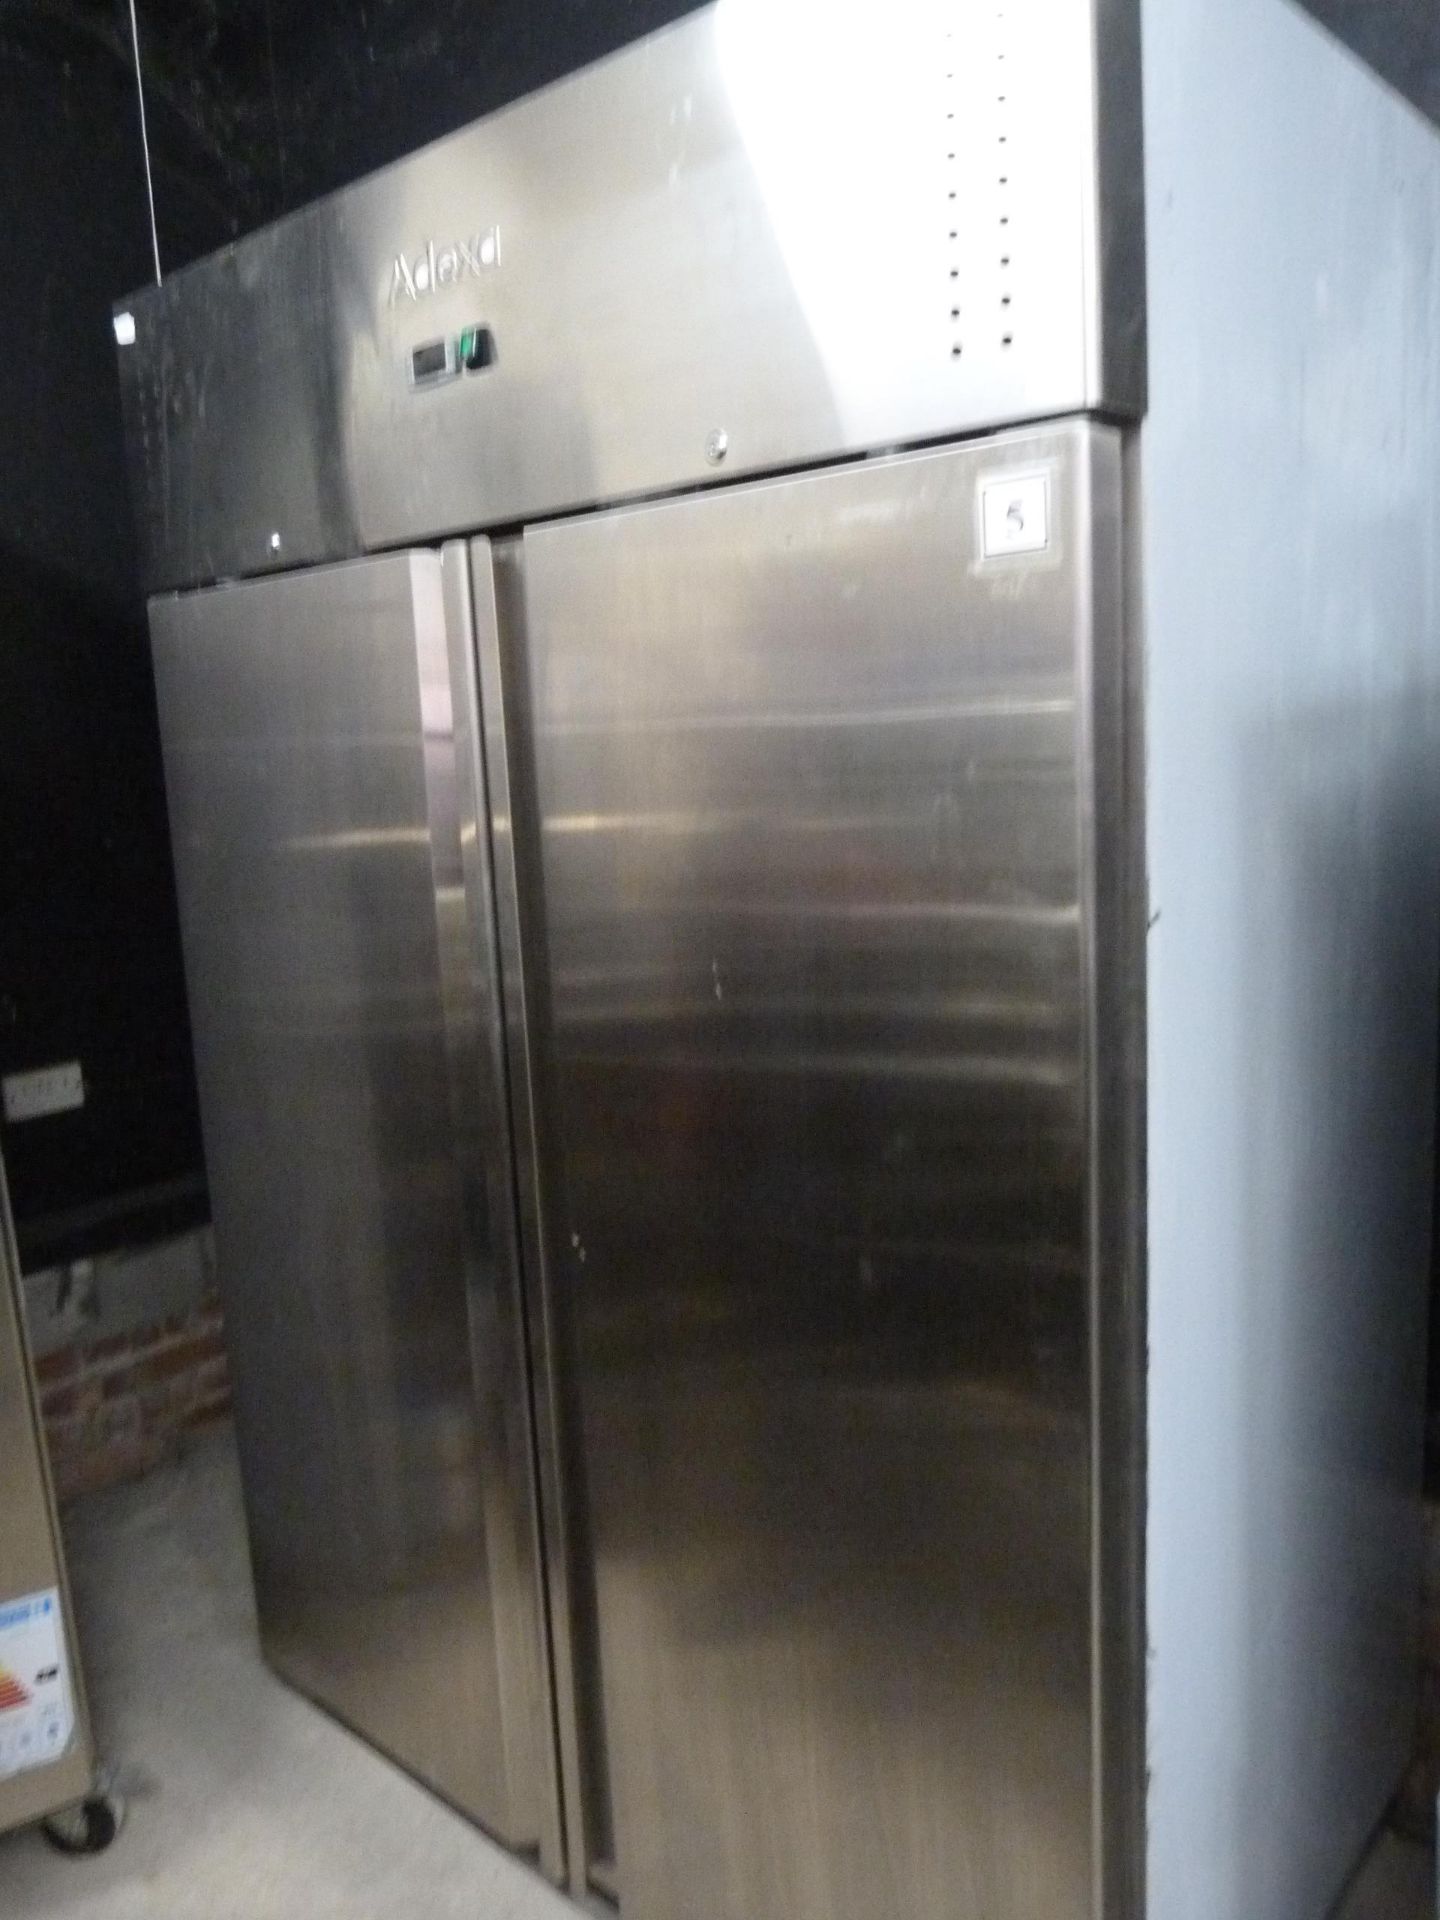 *Adexa Stainless Steel Double Door Refrigerator Mo